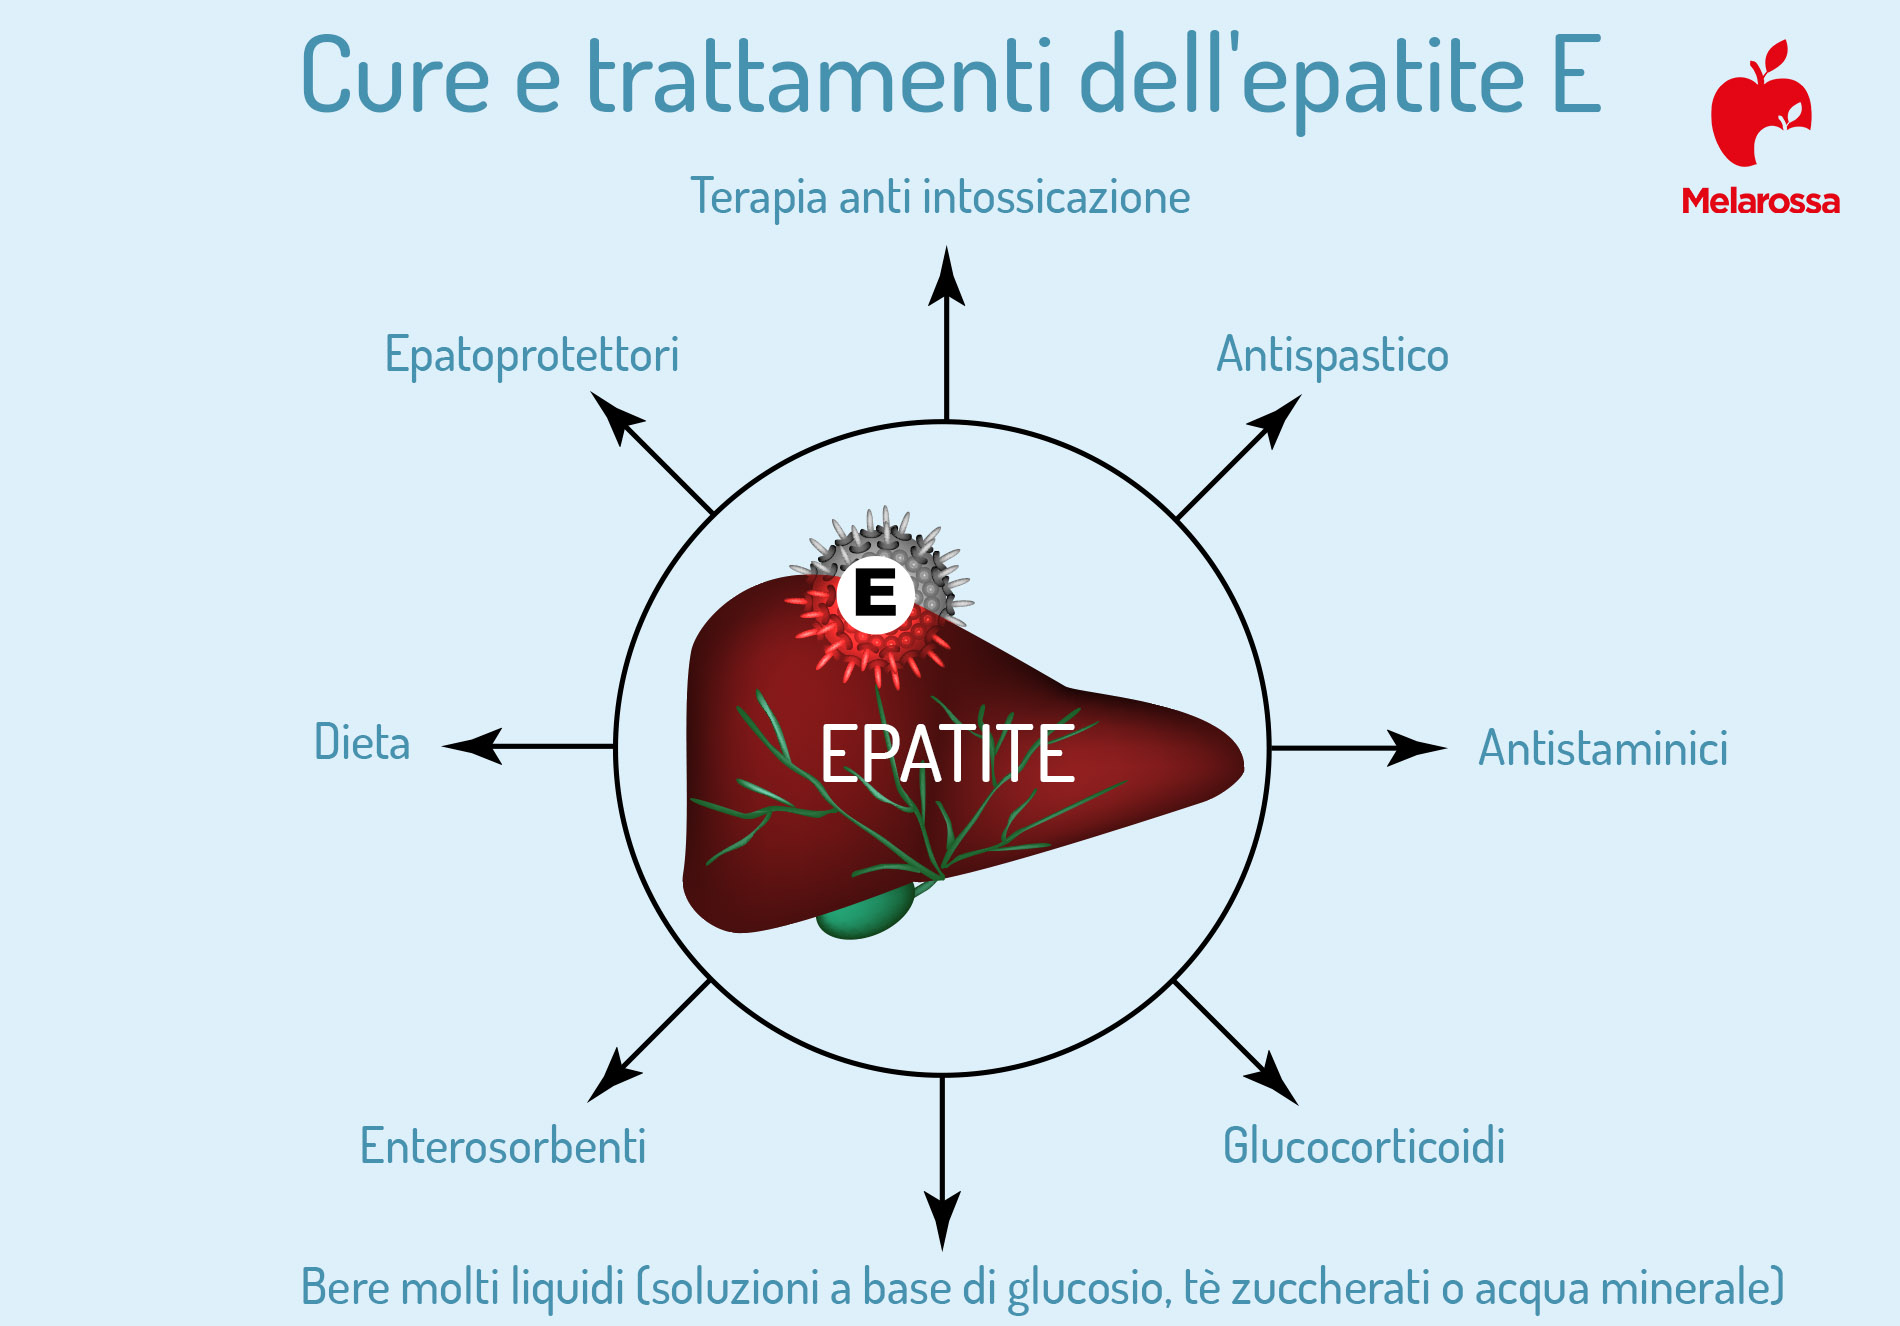 epatite E: cure e trattamenti